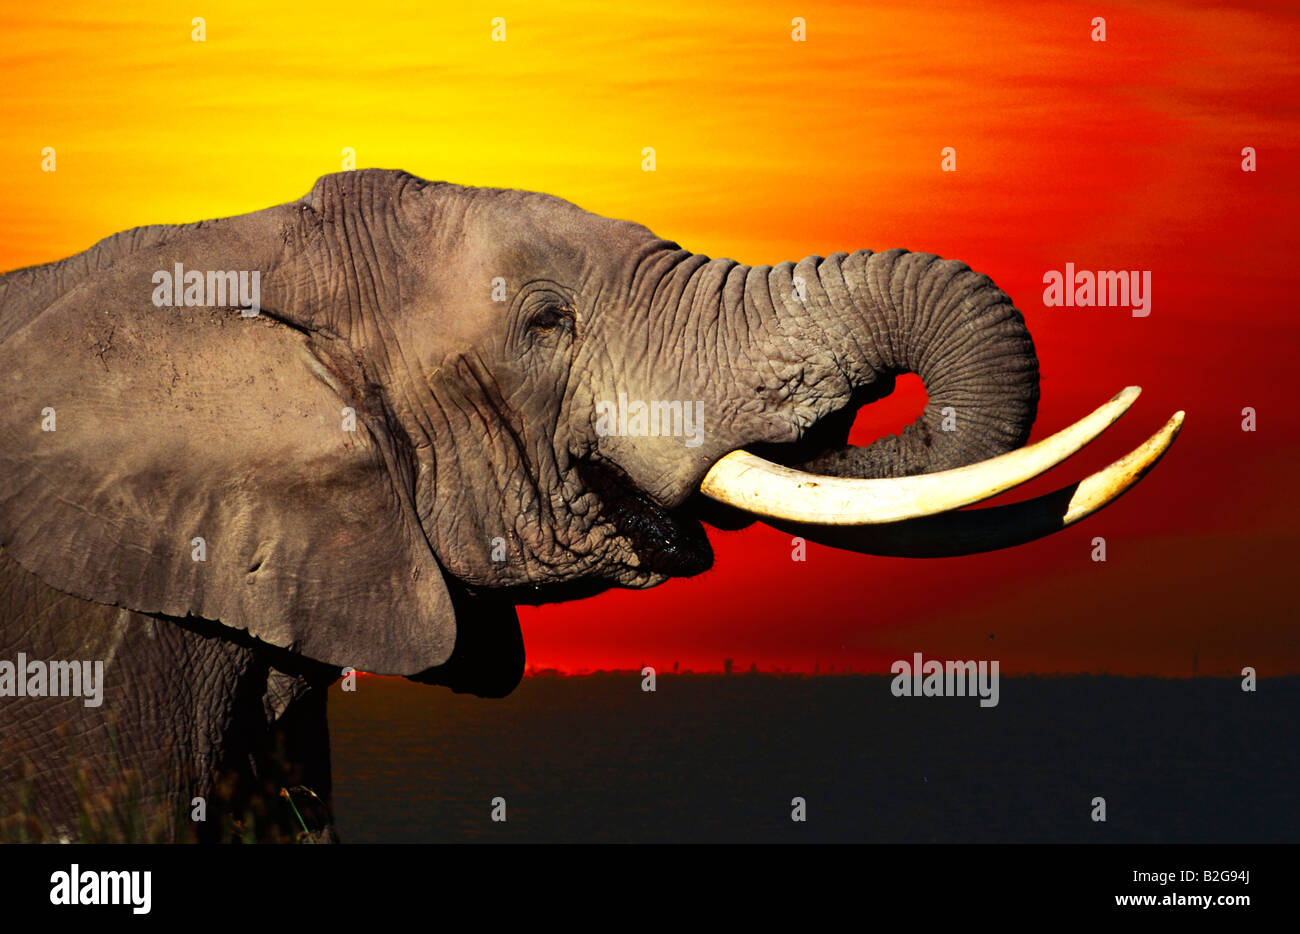 Elefante africano África profil sunset posluminiscencia retrato Foto de stock